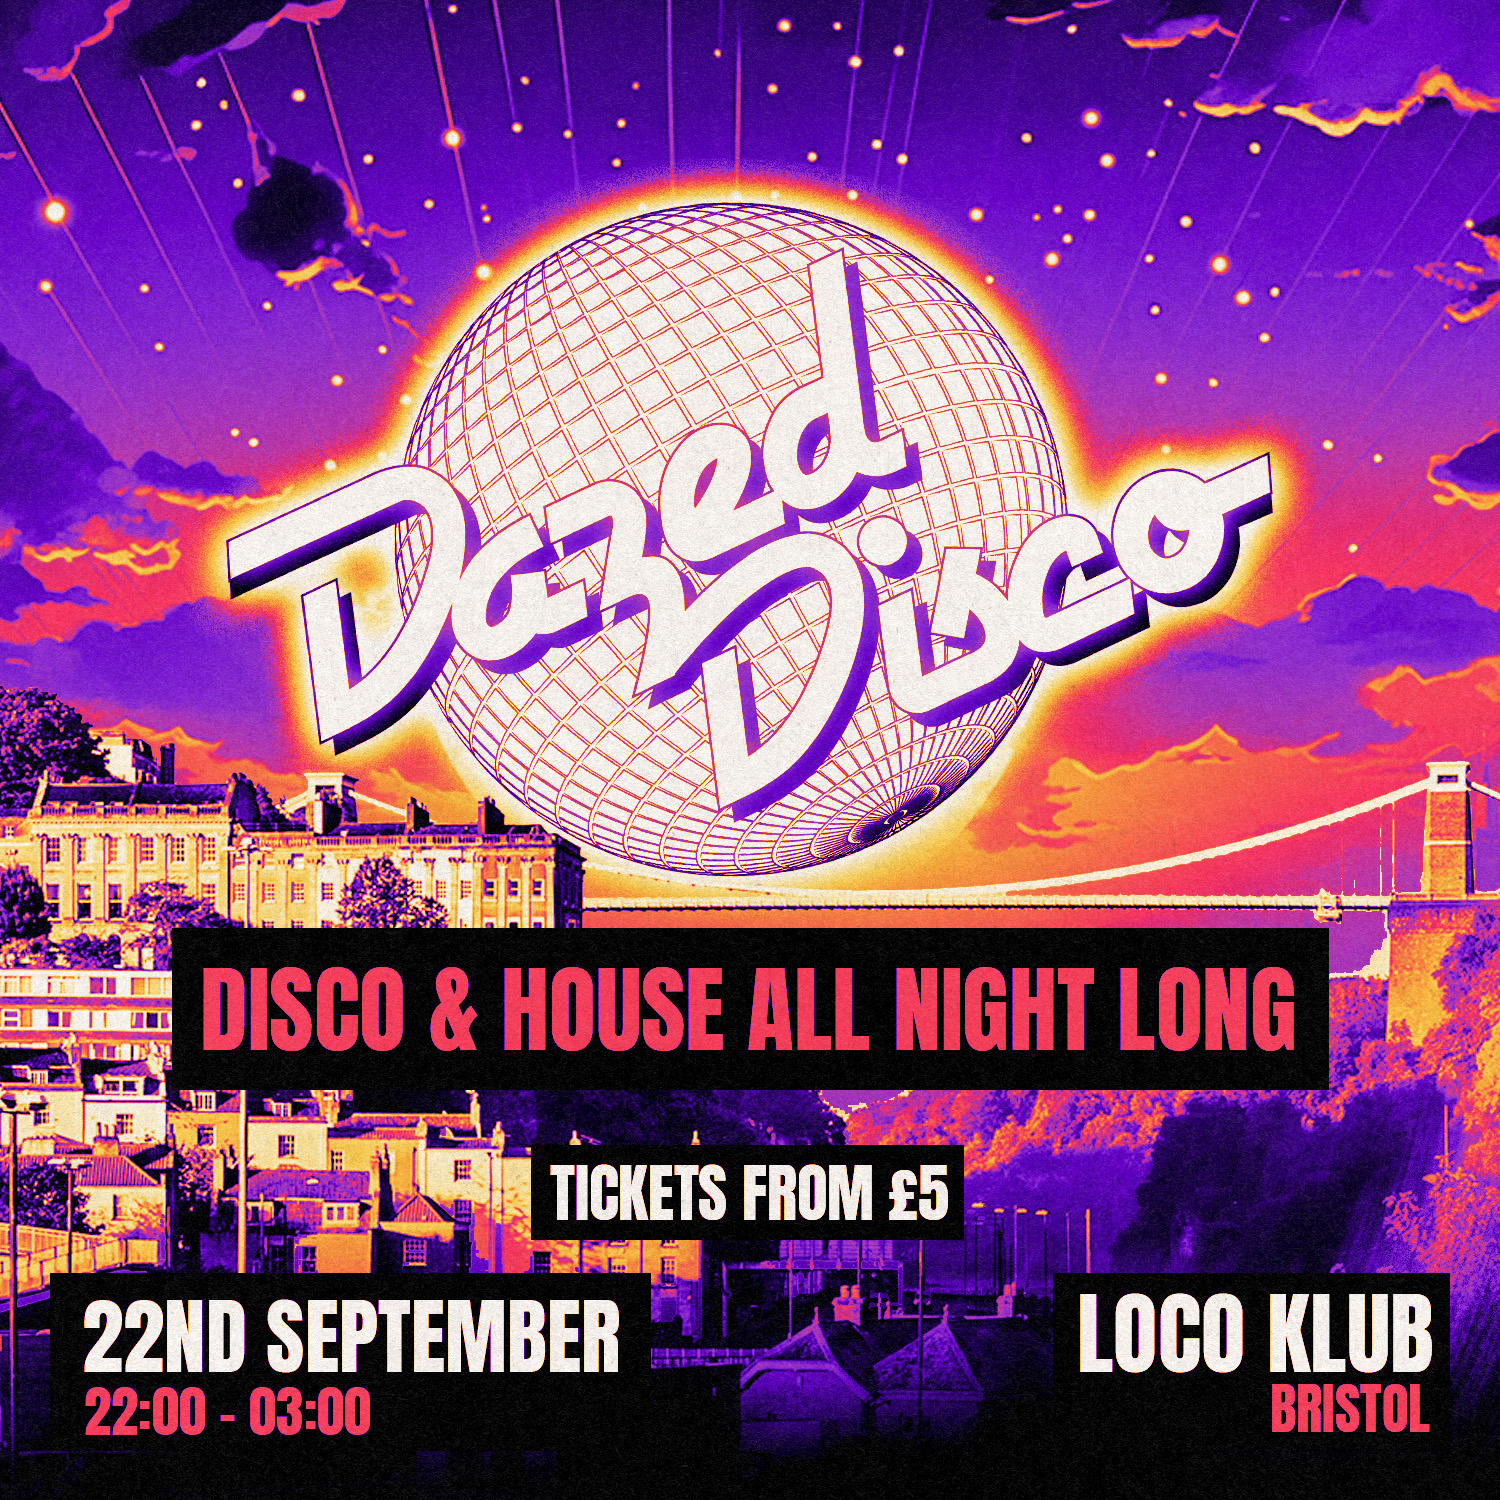 Dazed Disco: Bristol tickets — £5.50 The Loco Klub, Bristol